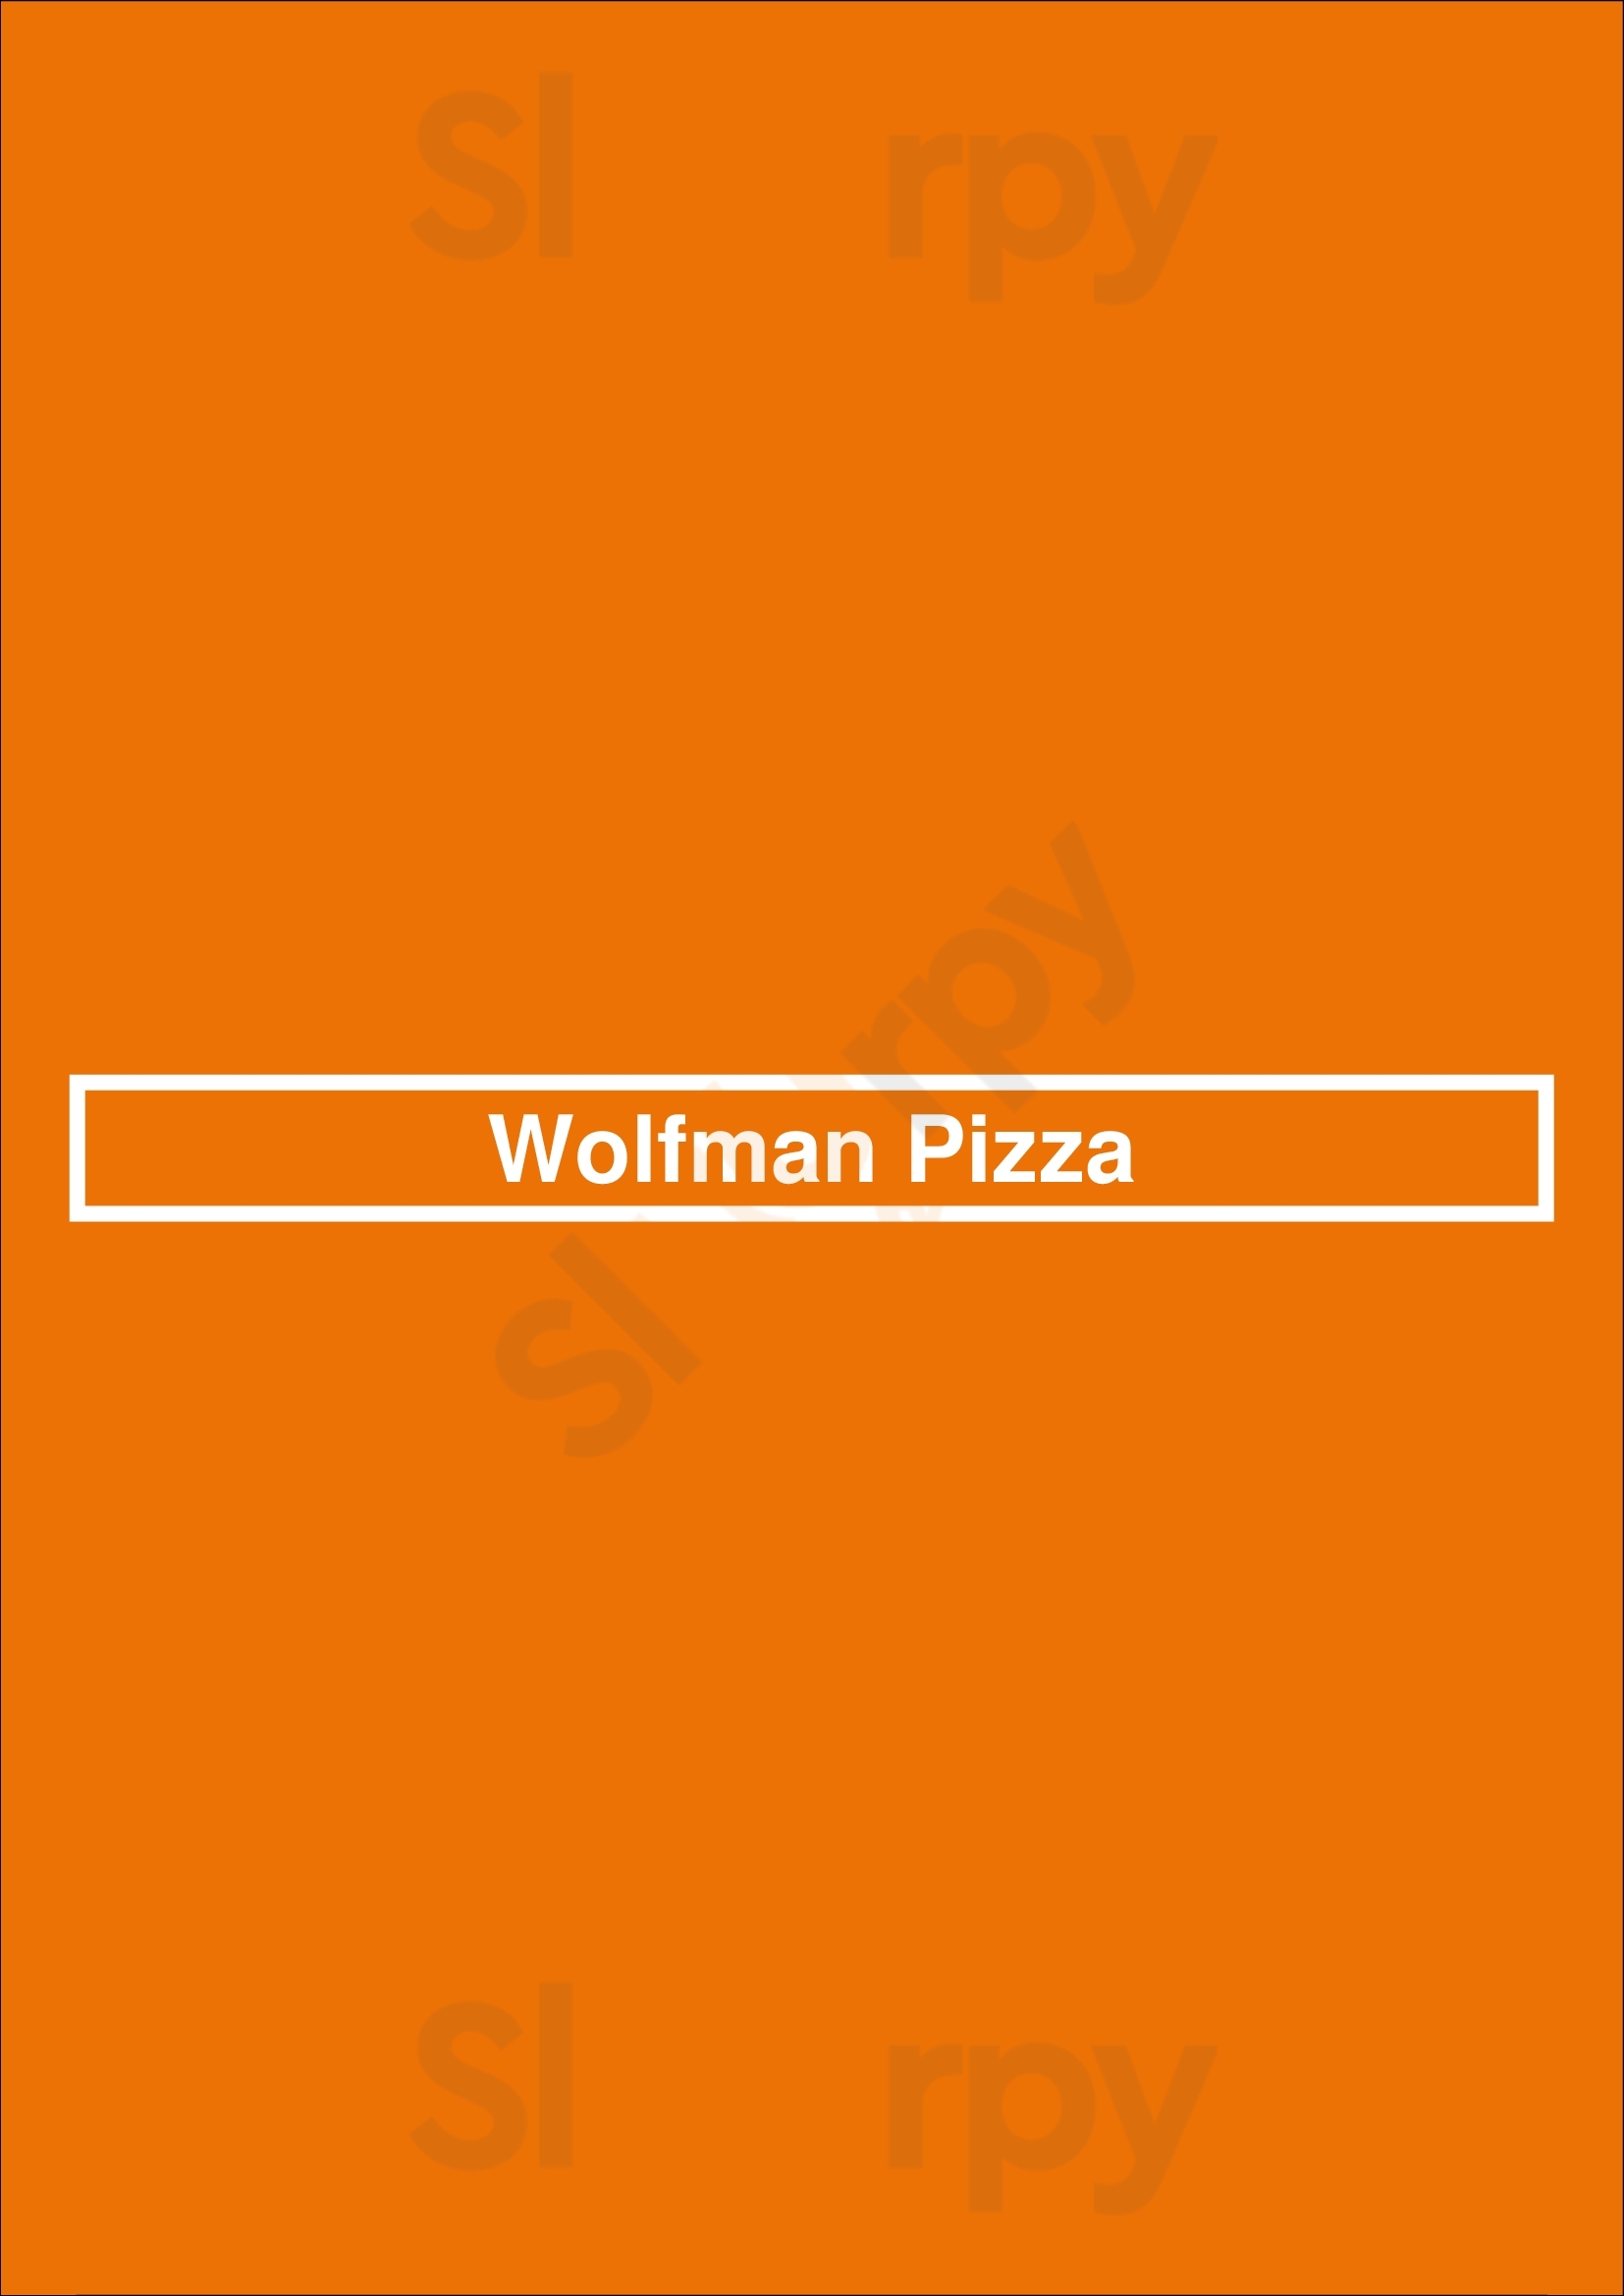 Wolfman Pizza Charlotte Menu - 1